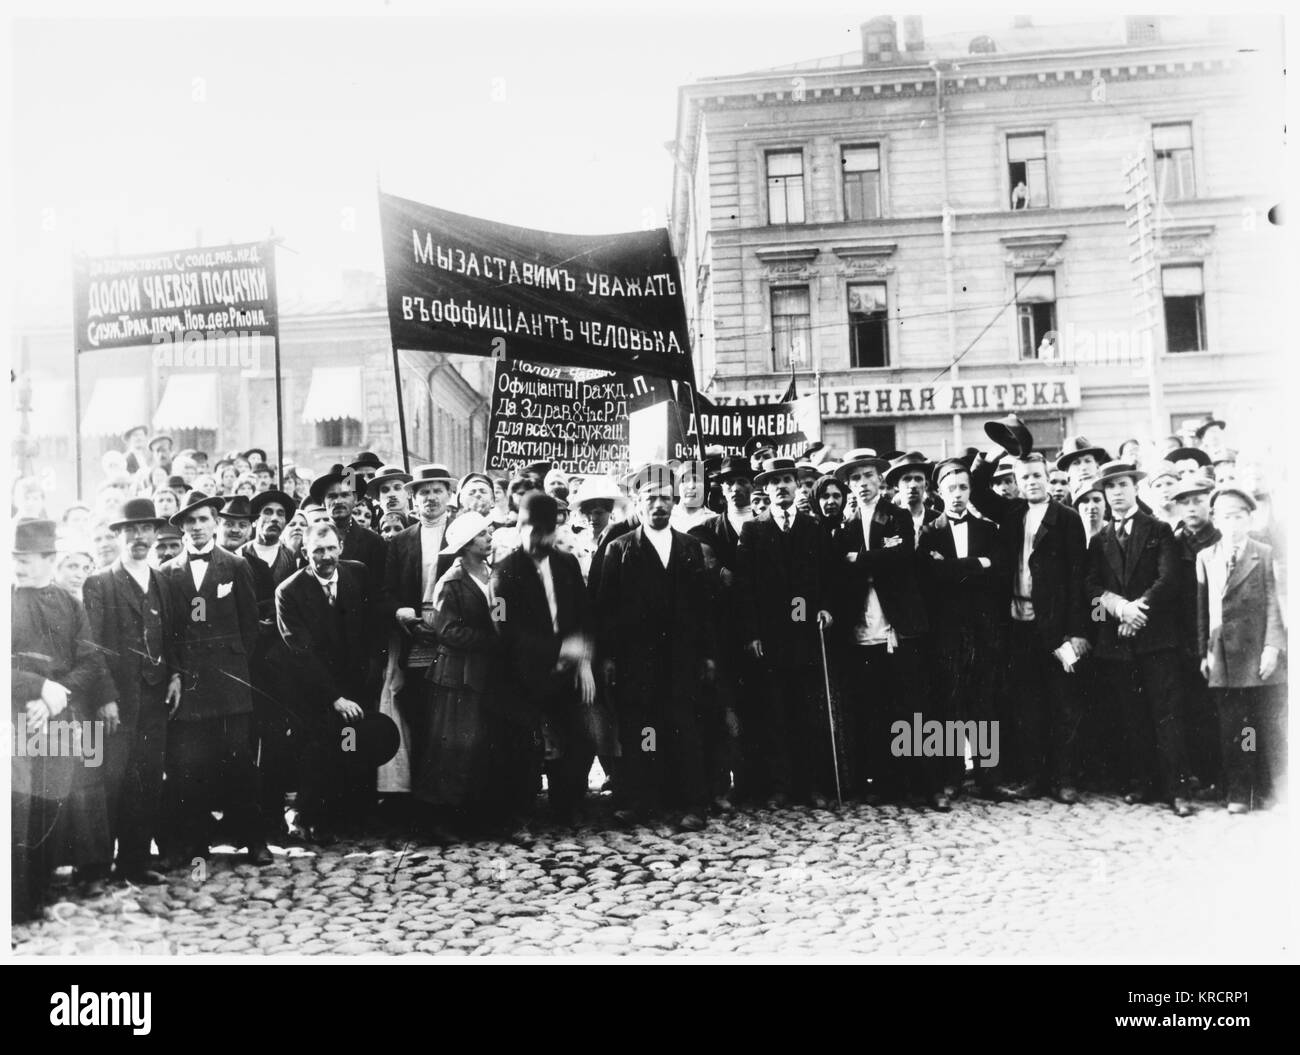 Révolution russe - par des serveurs de démonstration pour de meilleures conditions de travail. Date : Juin 1917 Banque D'Images